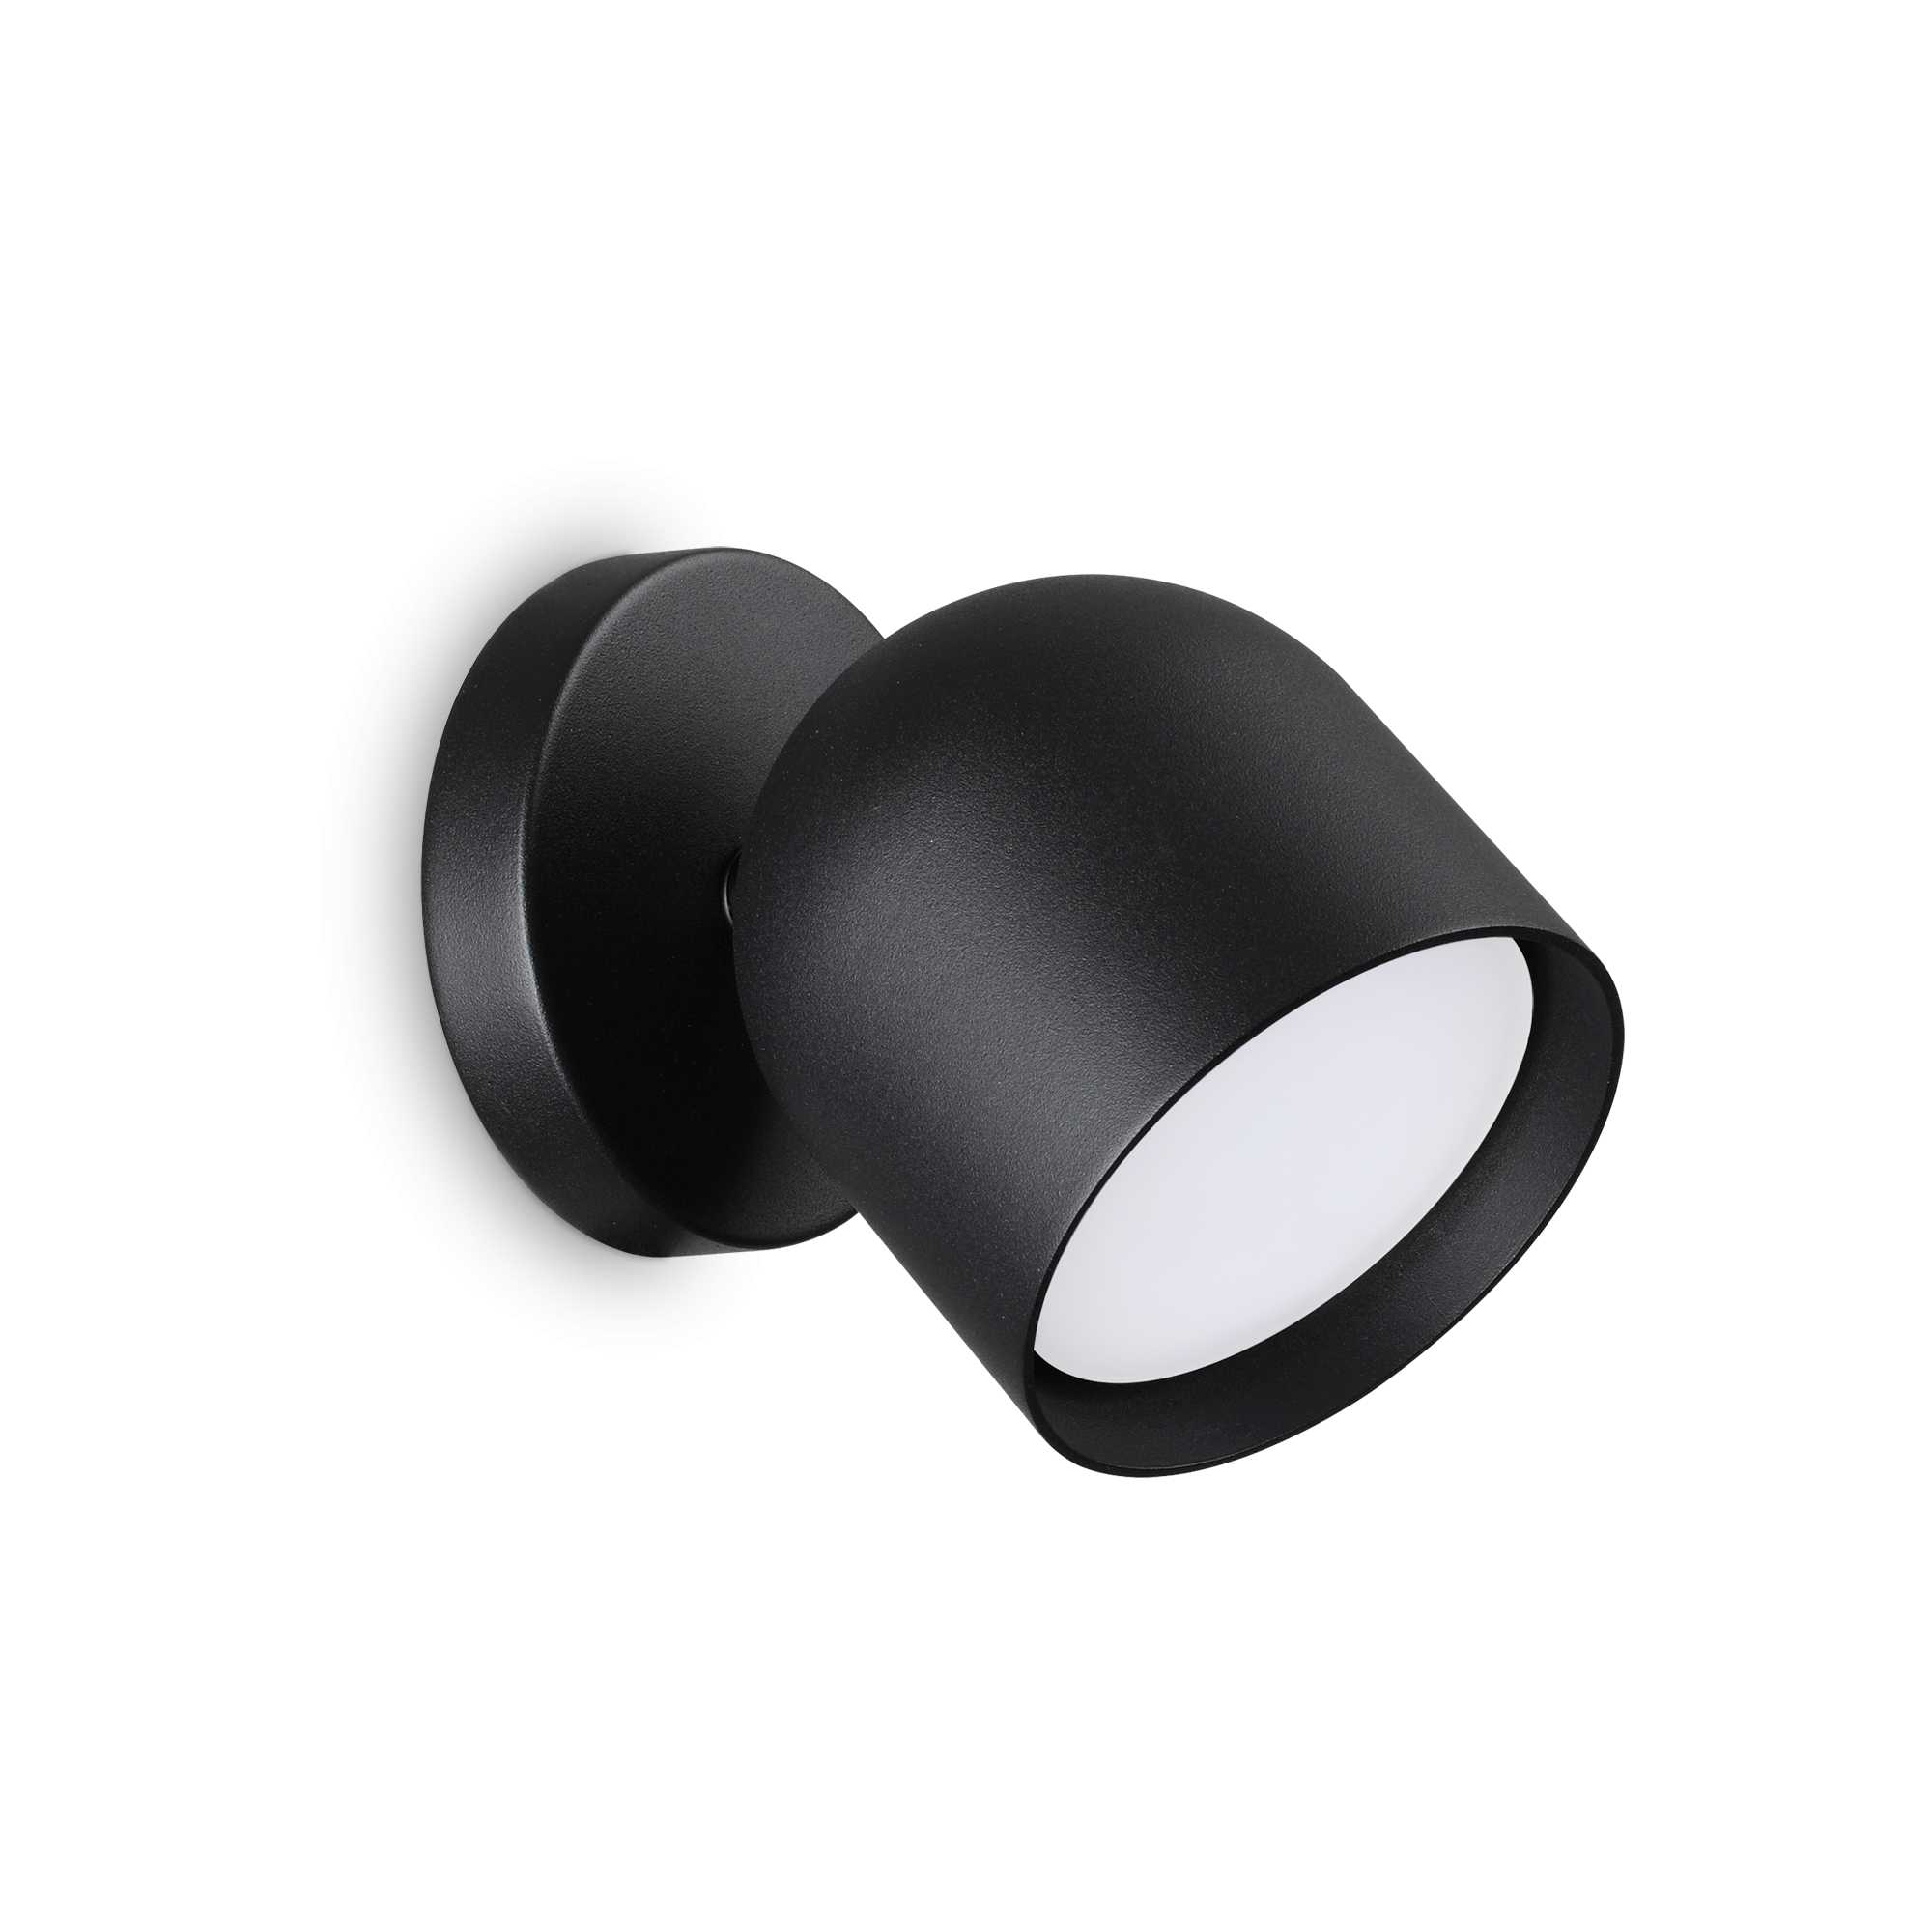 AD hotelska oprema Zidna lampa Dodo ap1- Crne boje slika proizvoda